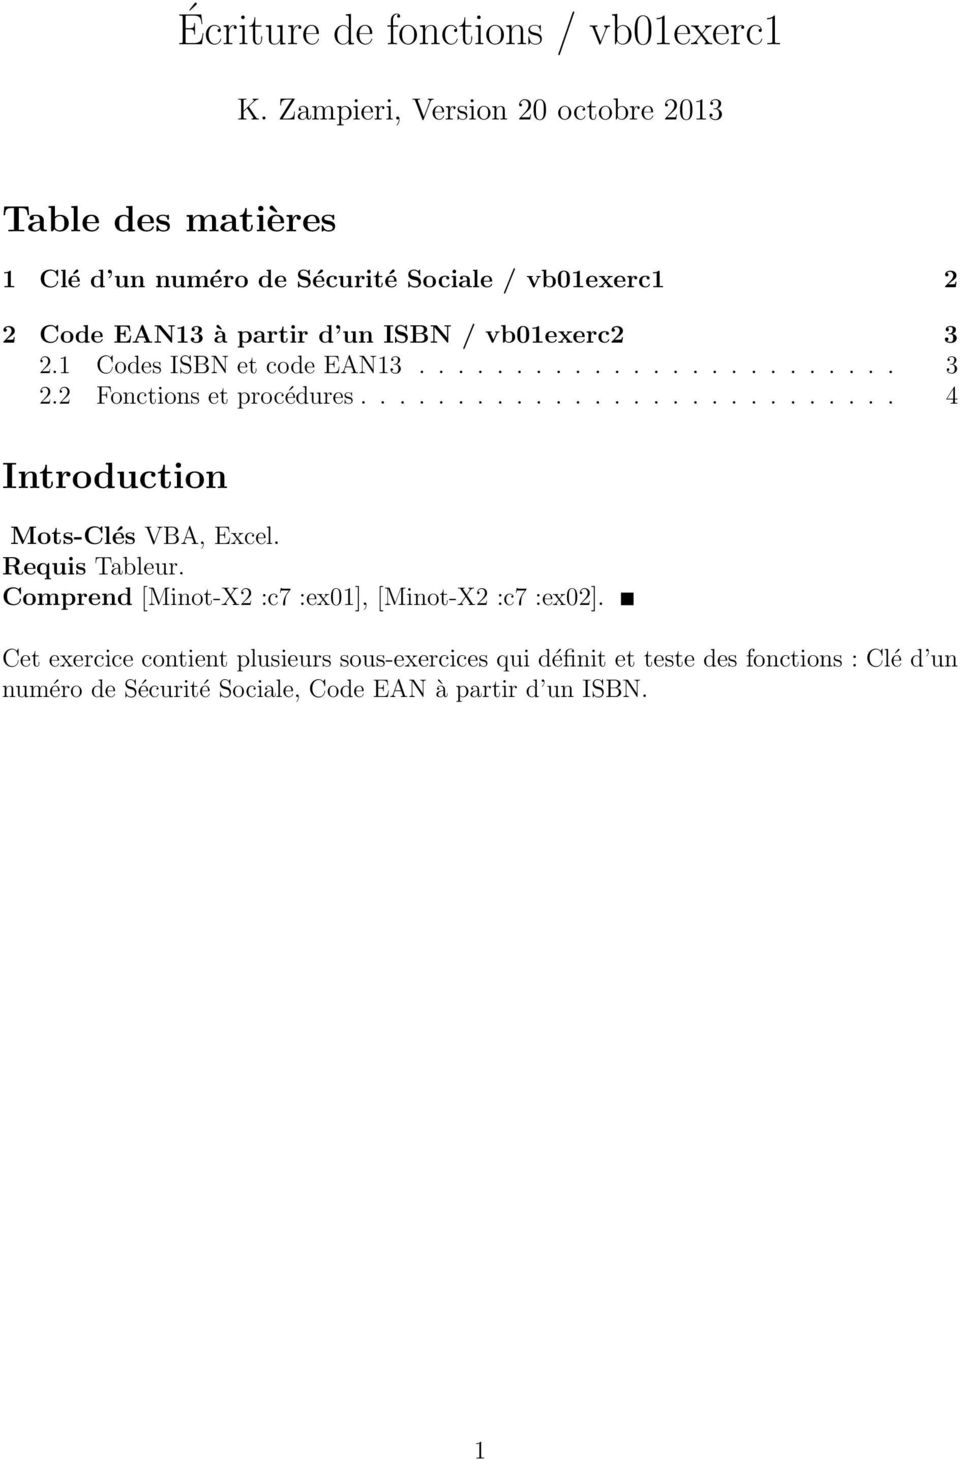 vb01exerc2 3 2.1 Codes ISBN et code EAN13......................... 3 2.2 Fonctions et procédures............................ 4 Introduction Mots-Clés VBA, Excel.